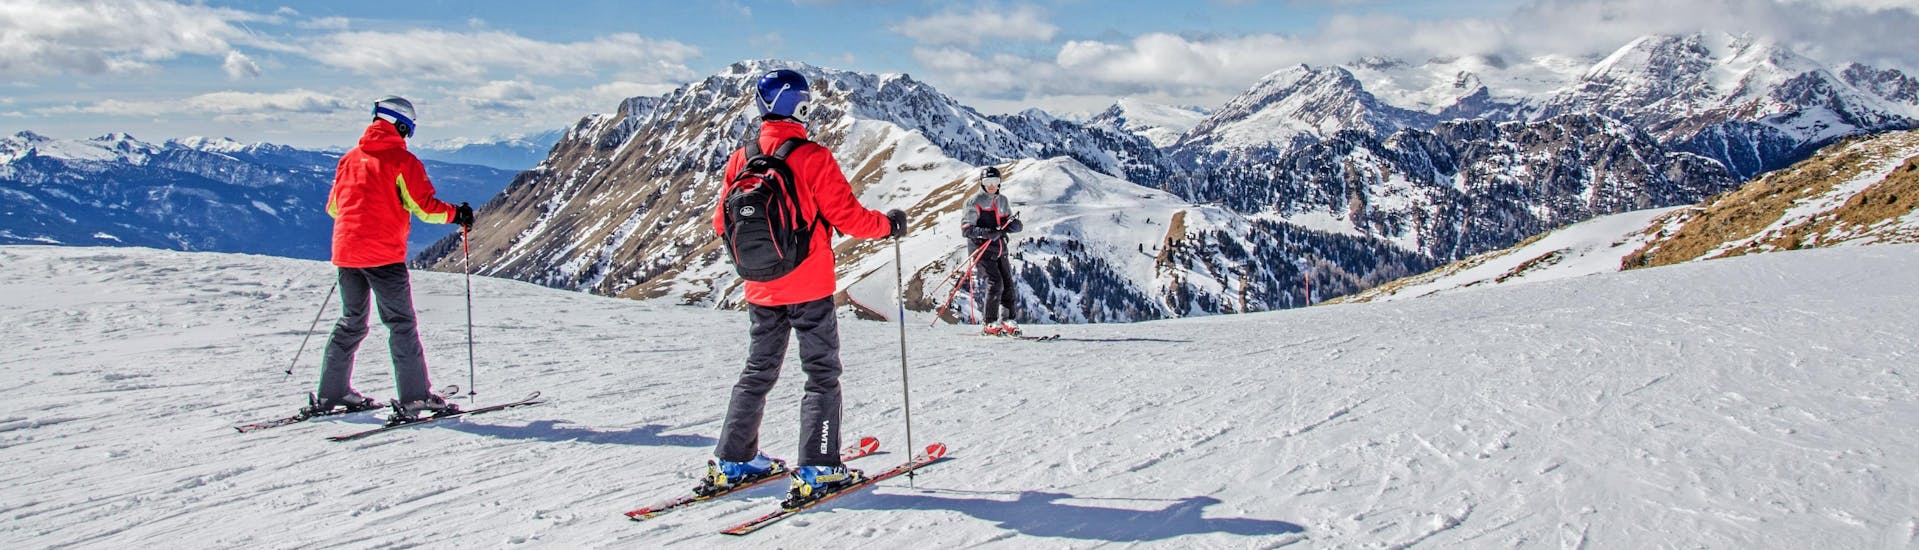 Des skieurs au sommet des montagnes qui surplombent la station de ski.